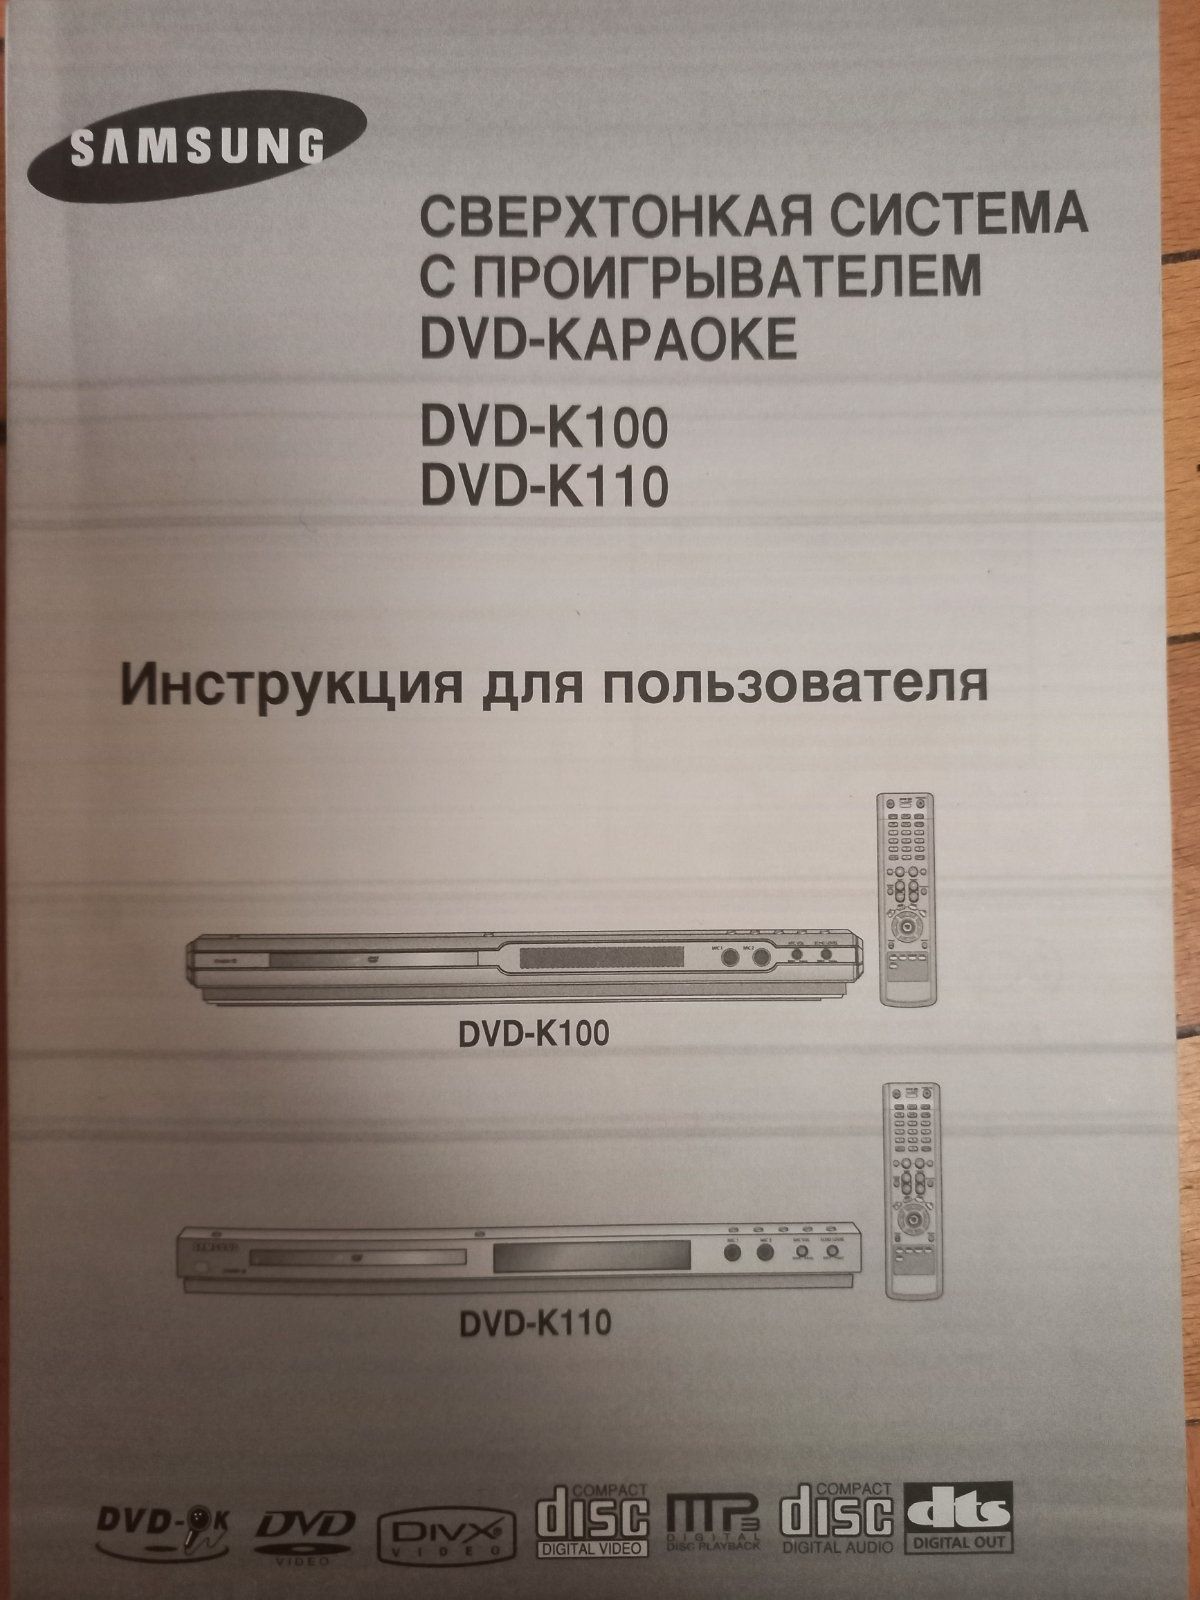 Cверхтонкая система DVD с караоке